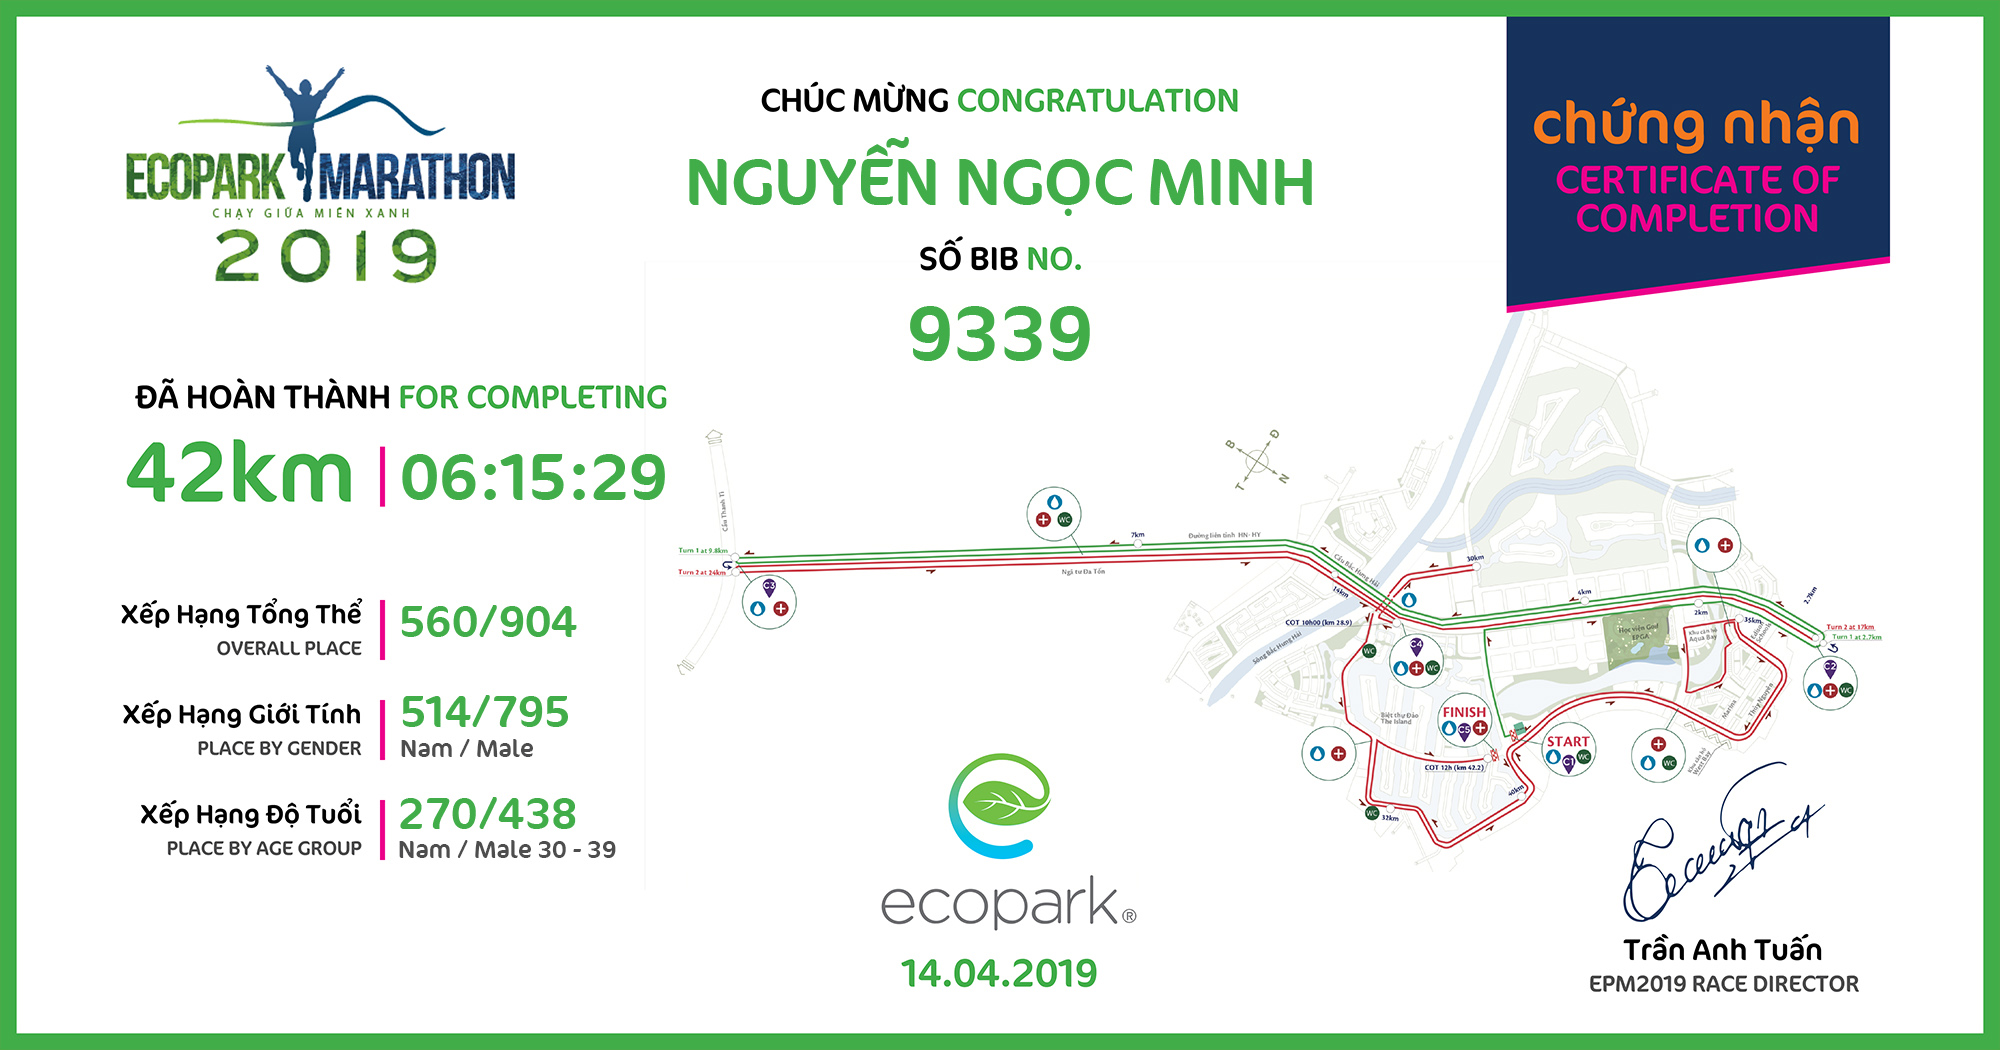 9339 - Nguyễn Ngọc Minh